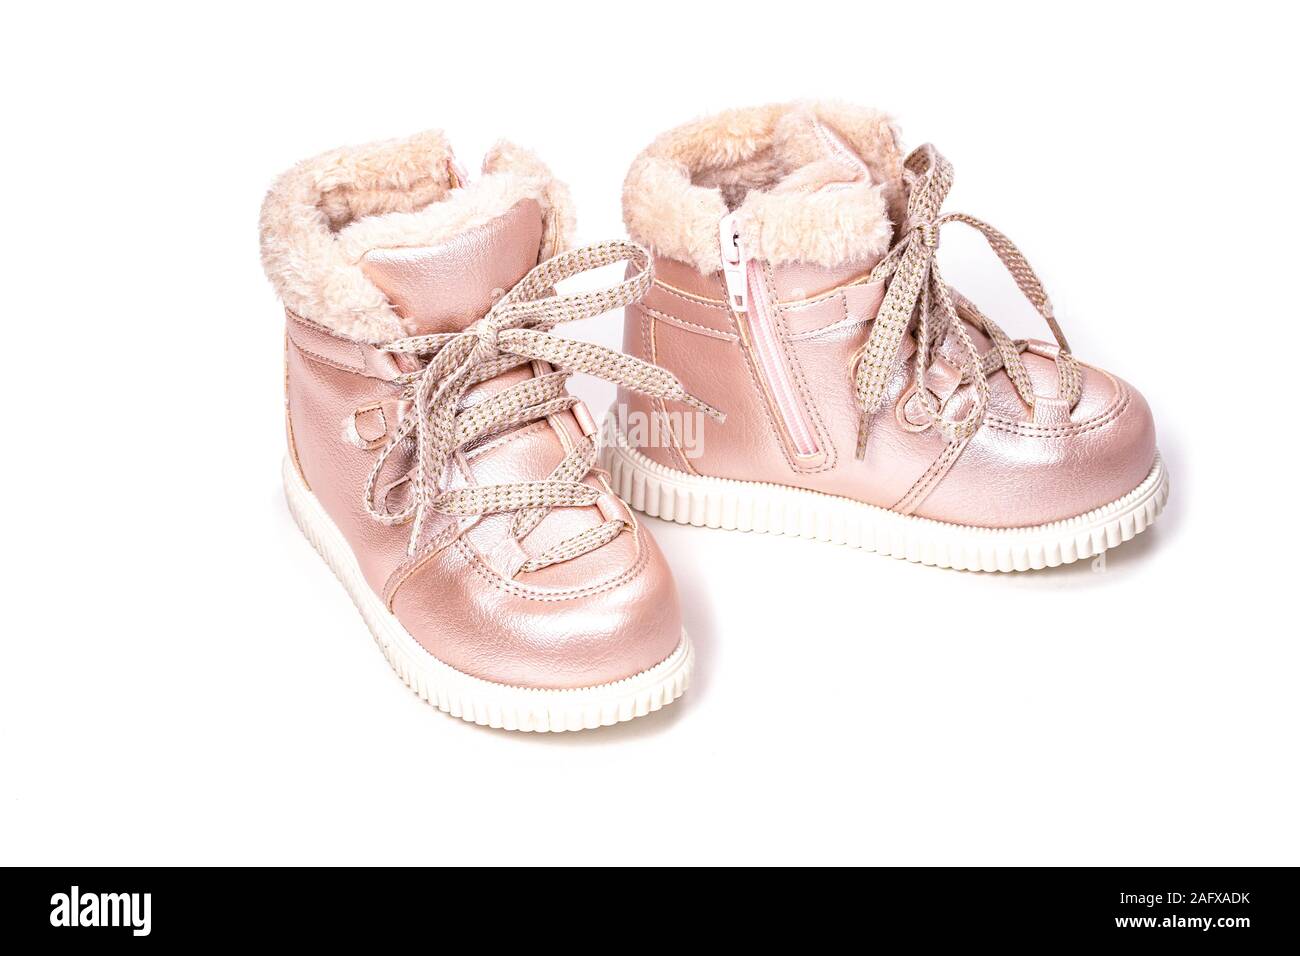 Chaussures Enfants bottes rose, avec la fausse fourrure pour l'hiver sur un  fond blanc. Le laçage, semelle blanche, fausse fourrure rose,  l'éco-friendly enfants chaussures d'hiver Photo Stock - Alamy